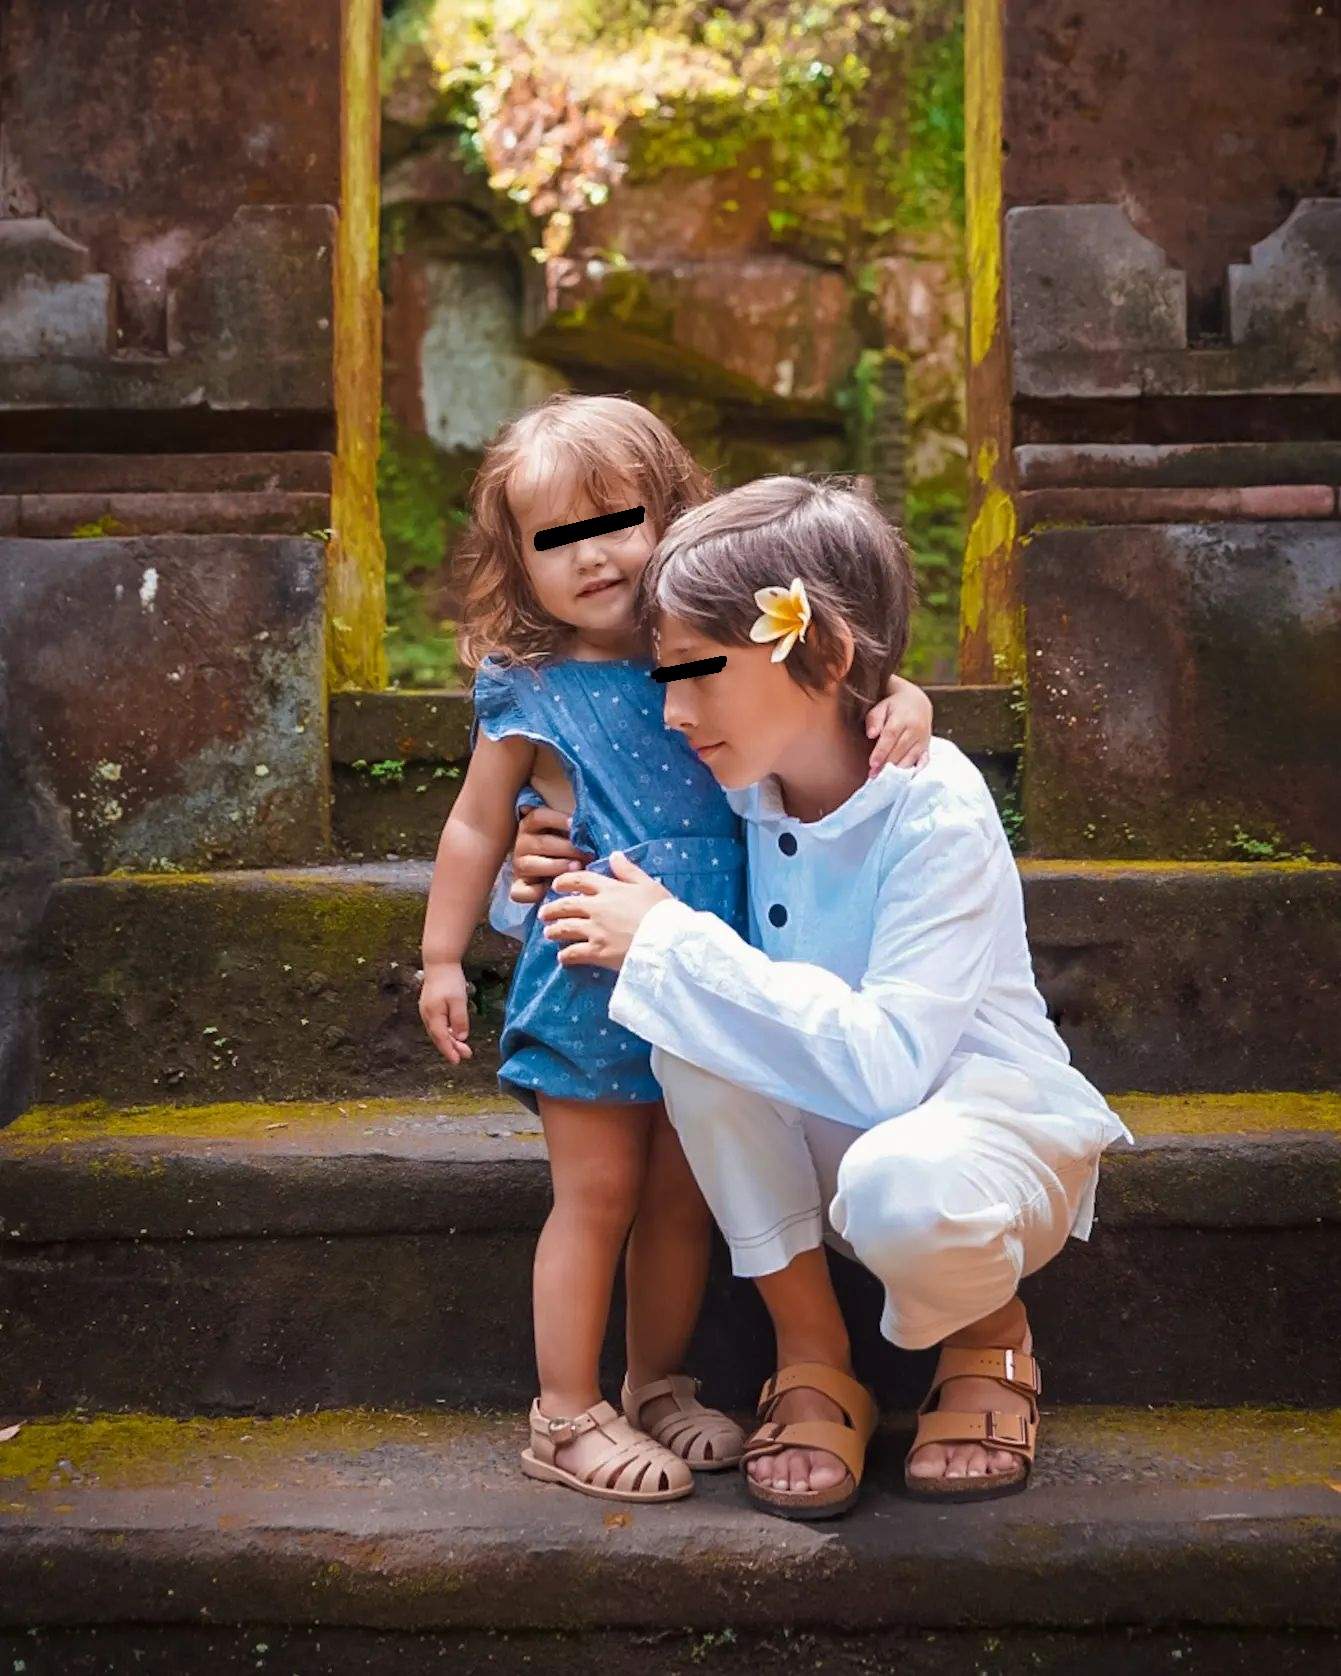 Dana Rogoz, imagine emoționantă din vacanța în Bali. Cum i-a fotografiat vedeta pe cei doi copii: ”Dacă mai durează mult senzația voi leșina...”